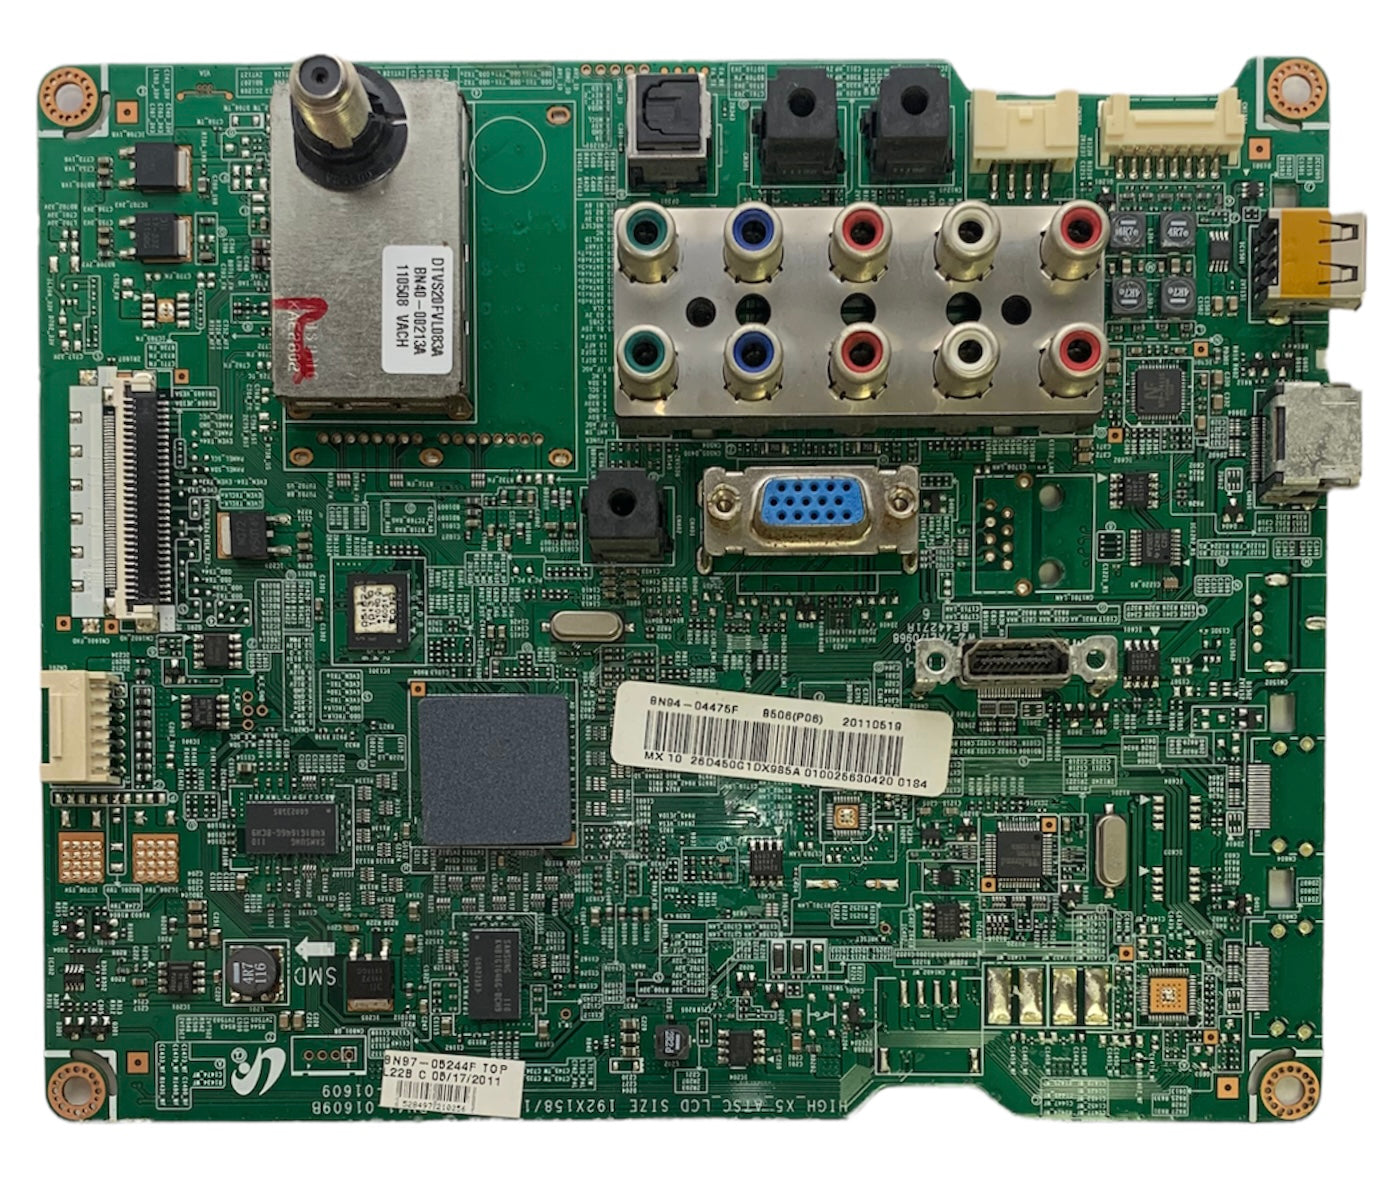 Samsung BN94-04475F Main Board for LN26D450G1DXZA